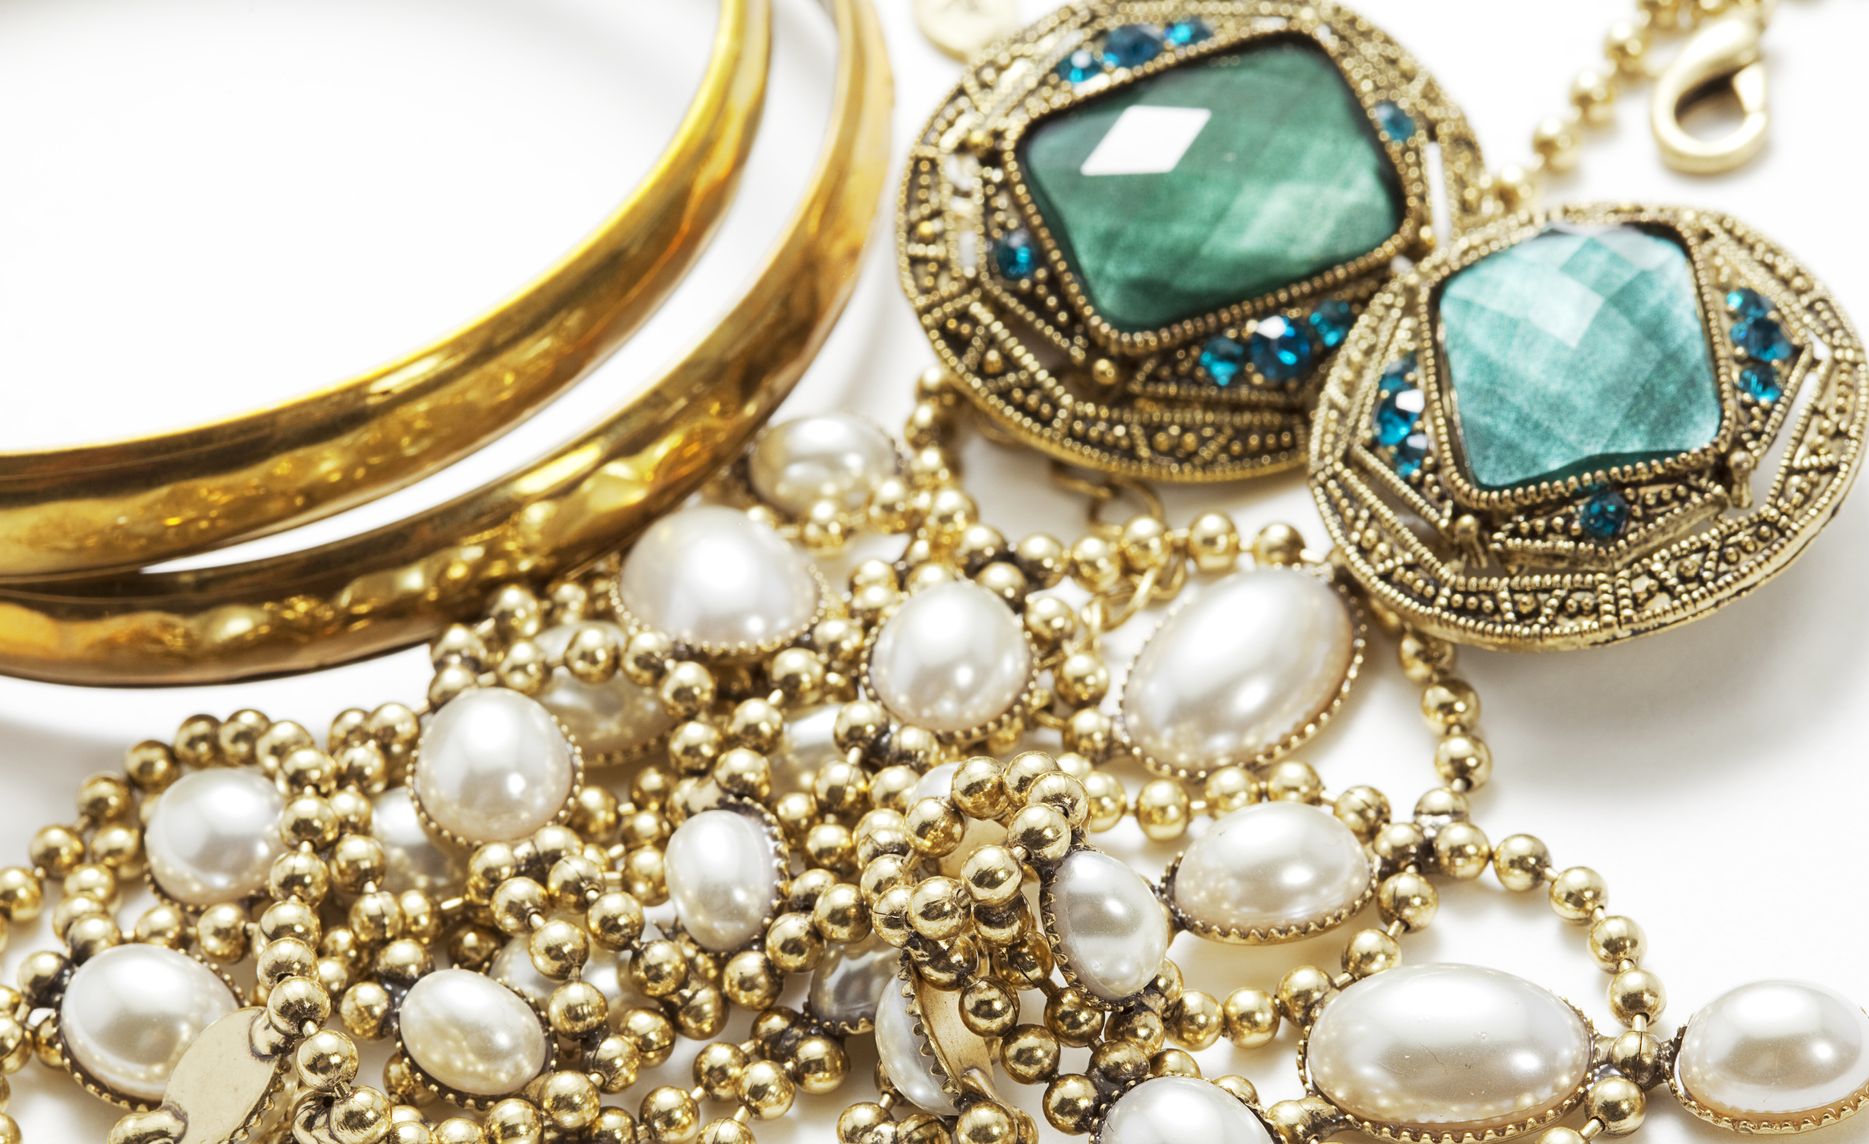 Understanding the Distinctions Between Vintage and Antique Jewellery